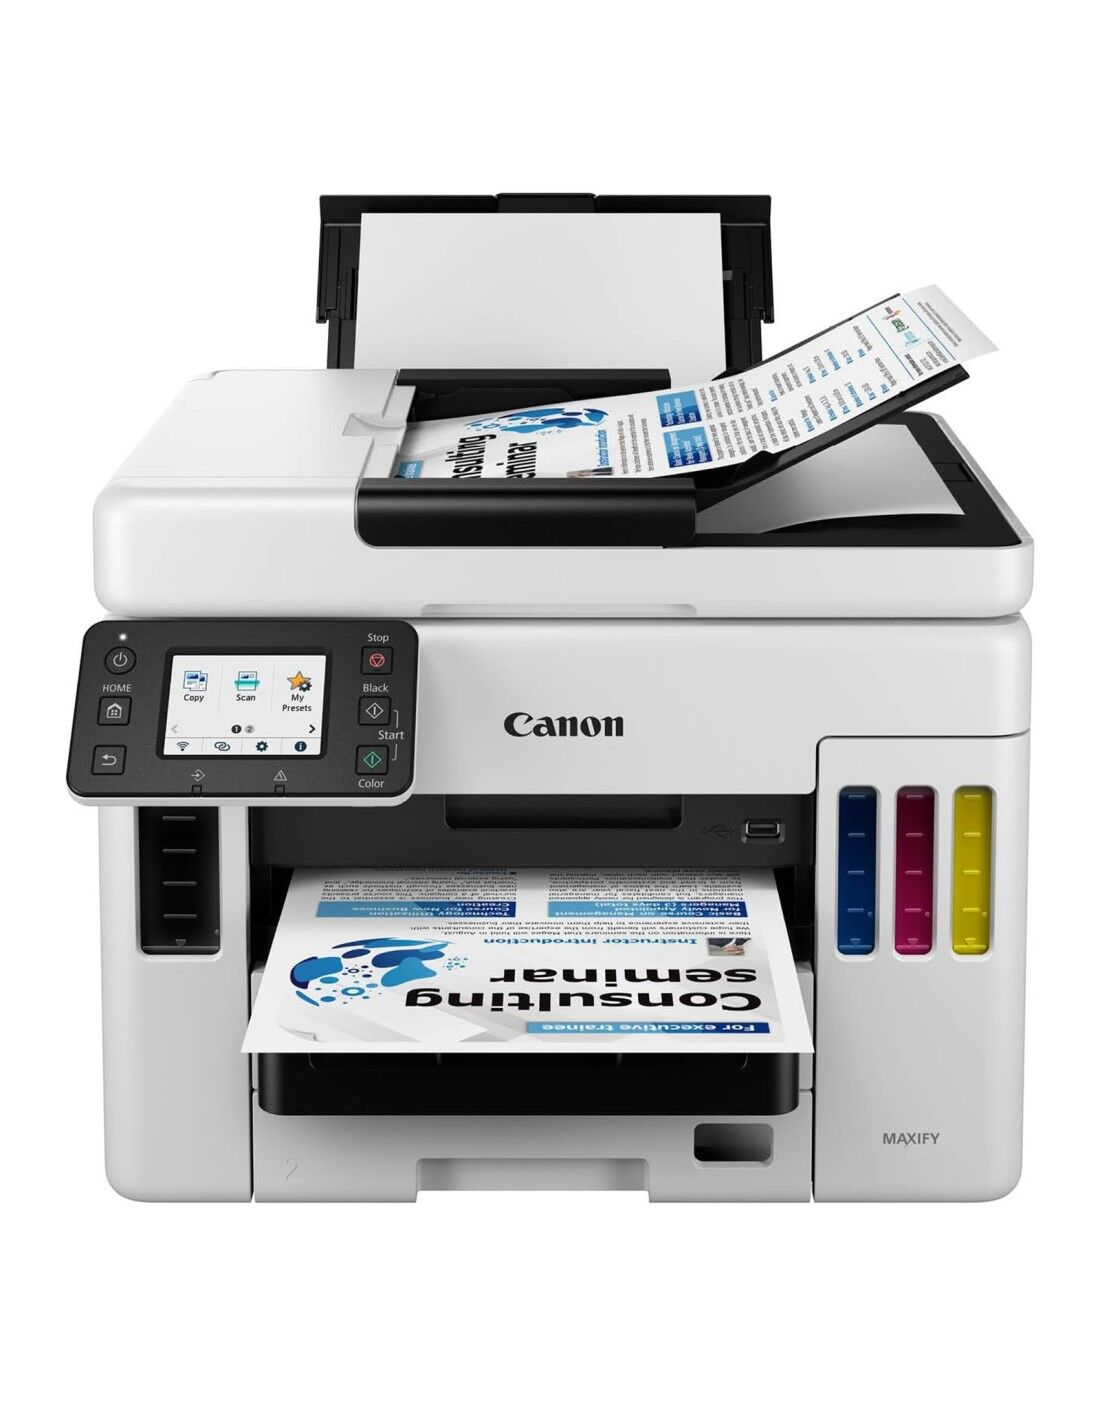 canon maxify gx7050 stampante multifunzione 4 in 1 a getto d'inchiostro a colori a4 wi-fi